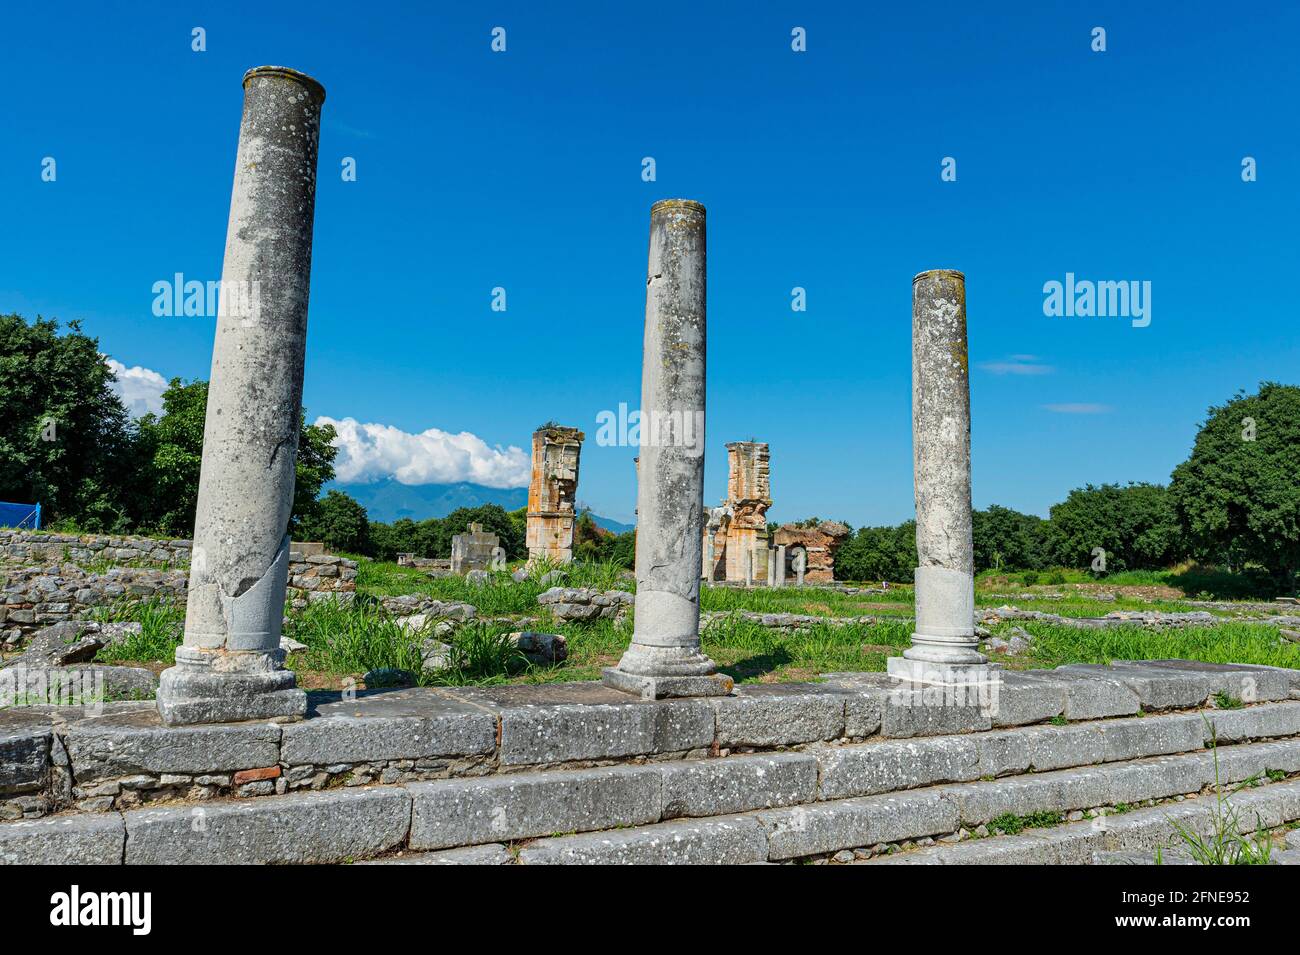 Site du patrimoine mondial de l'UNESCO, Philippi, Macédoine, Grèce Banque D'Images